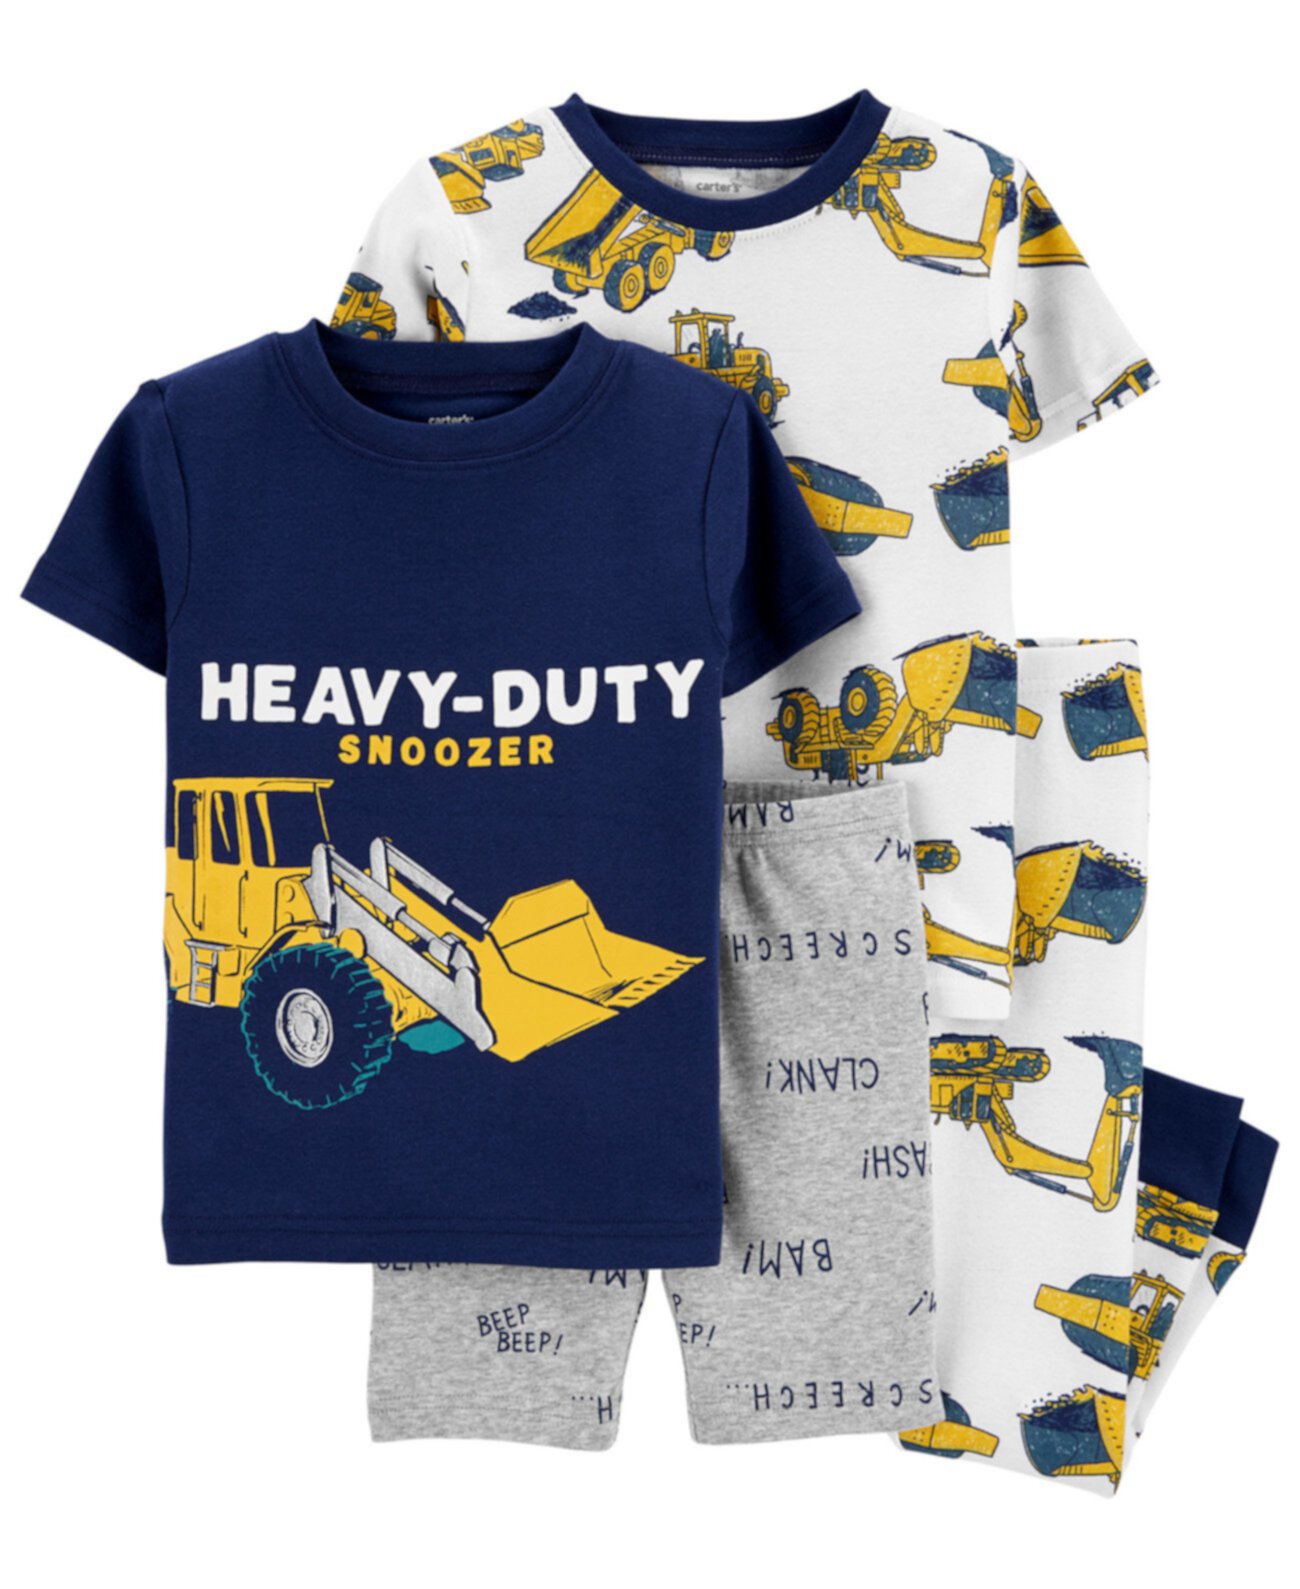 Малыши для мальчиков 4 шт. Хлопковая пижама Heavy Duty Snoozer Carter's